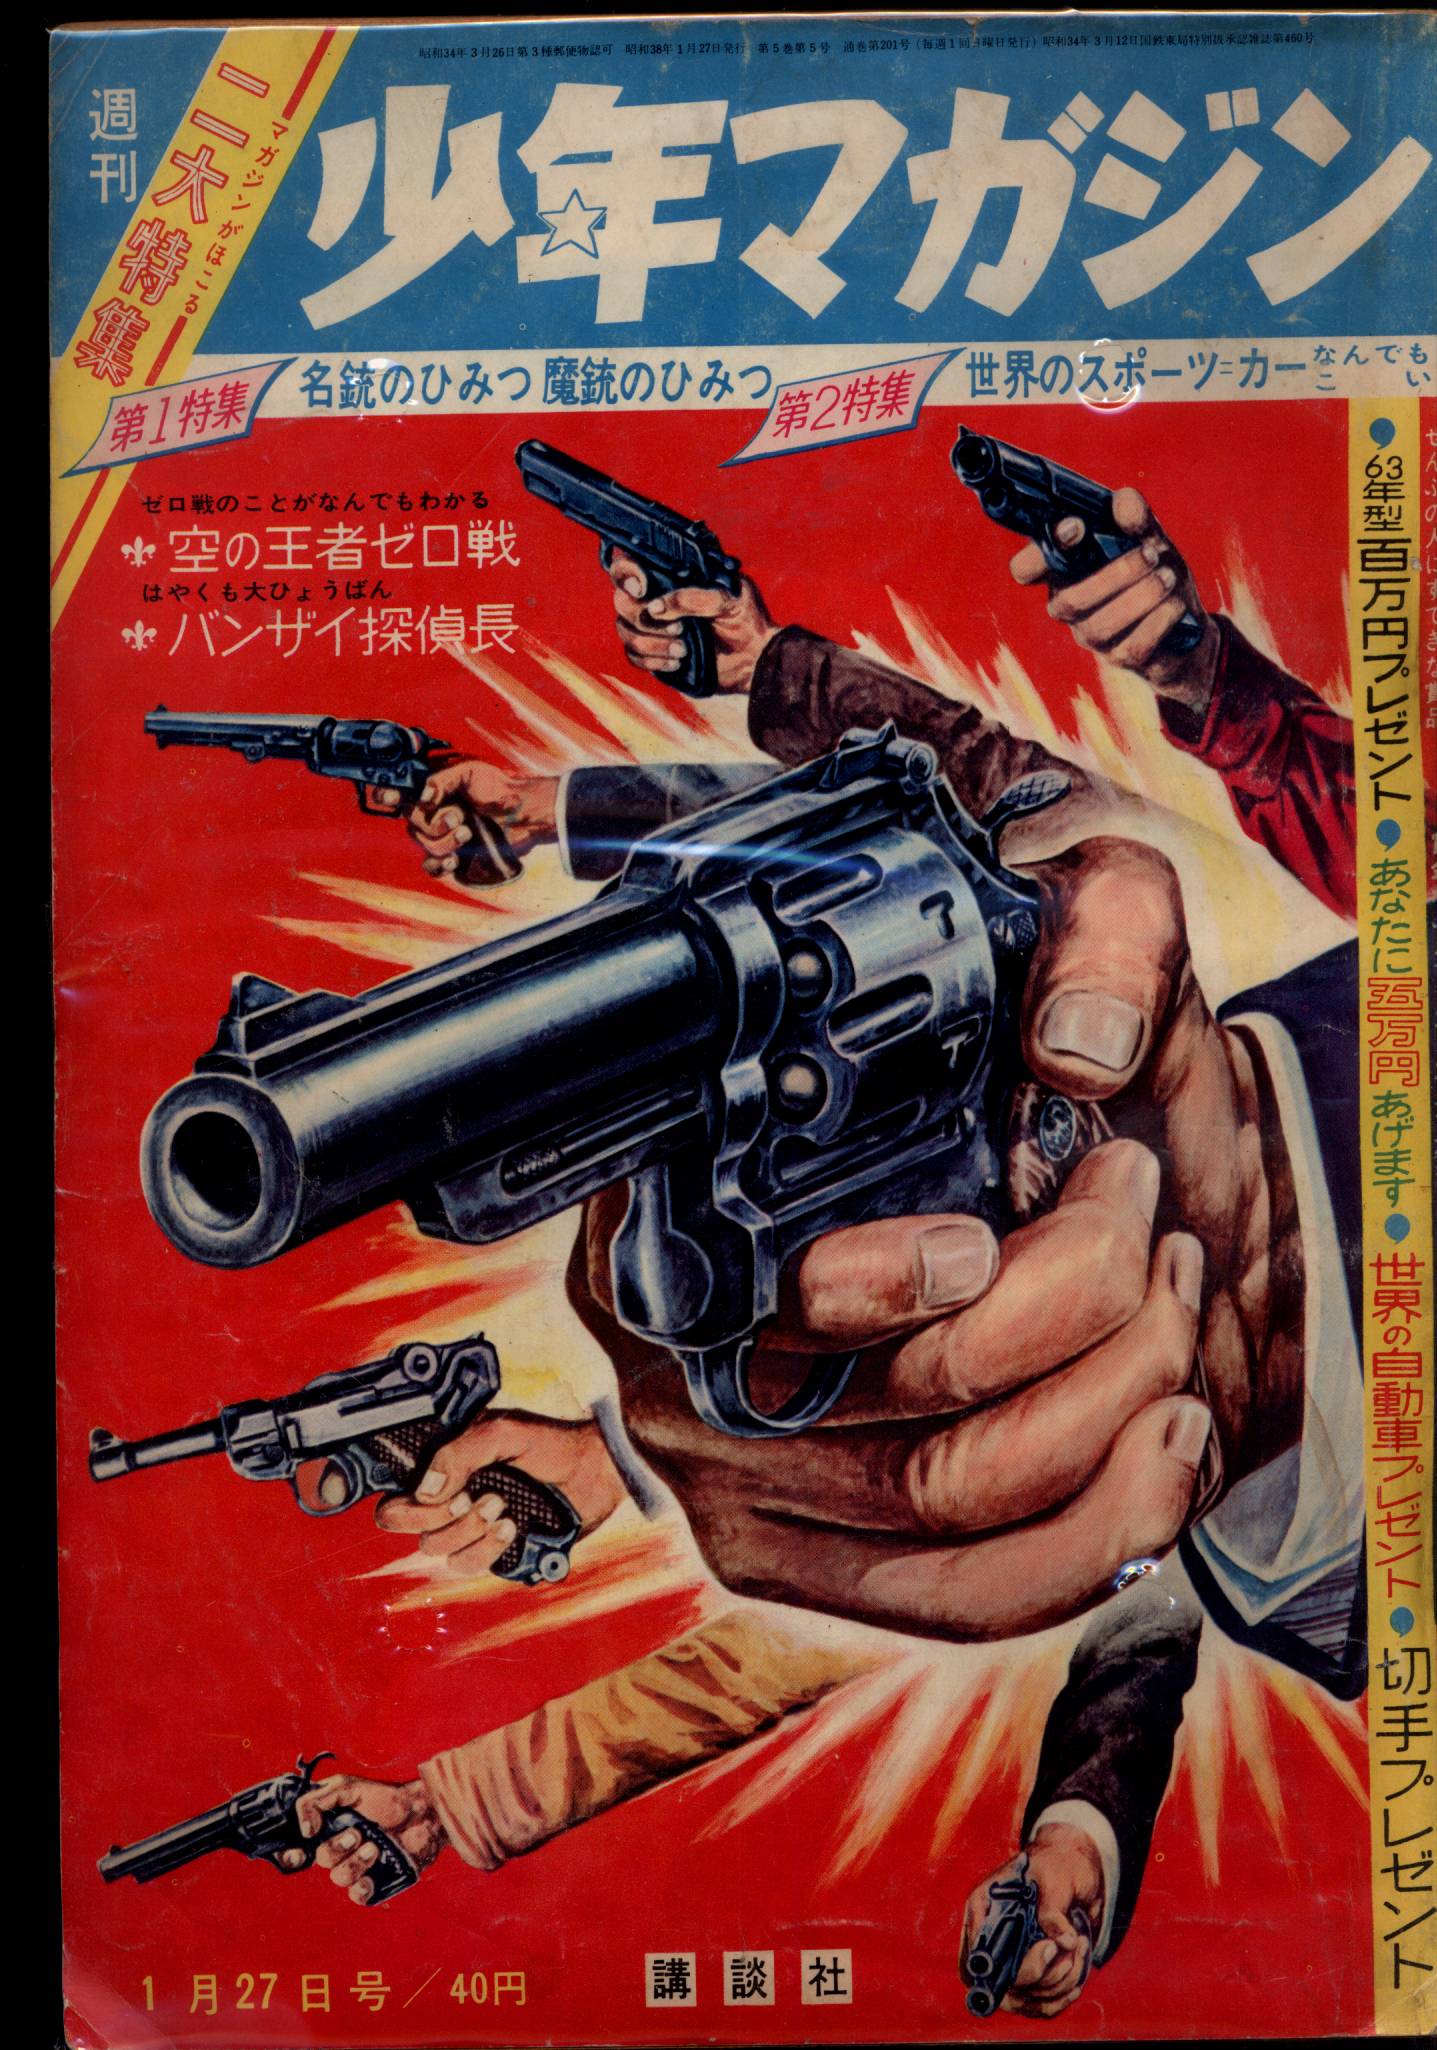 講談社 1963年(昭和38年)の漫画雑誌 週刊少年マガジン1963年(昭和38年